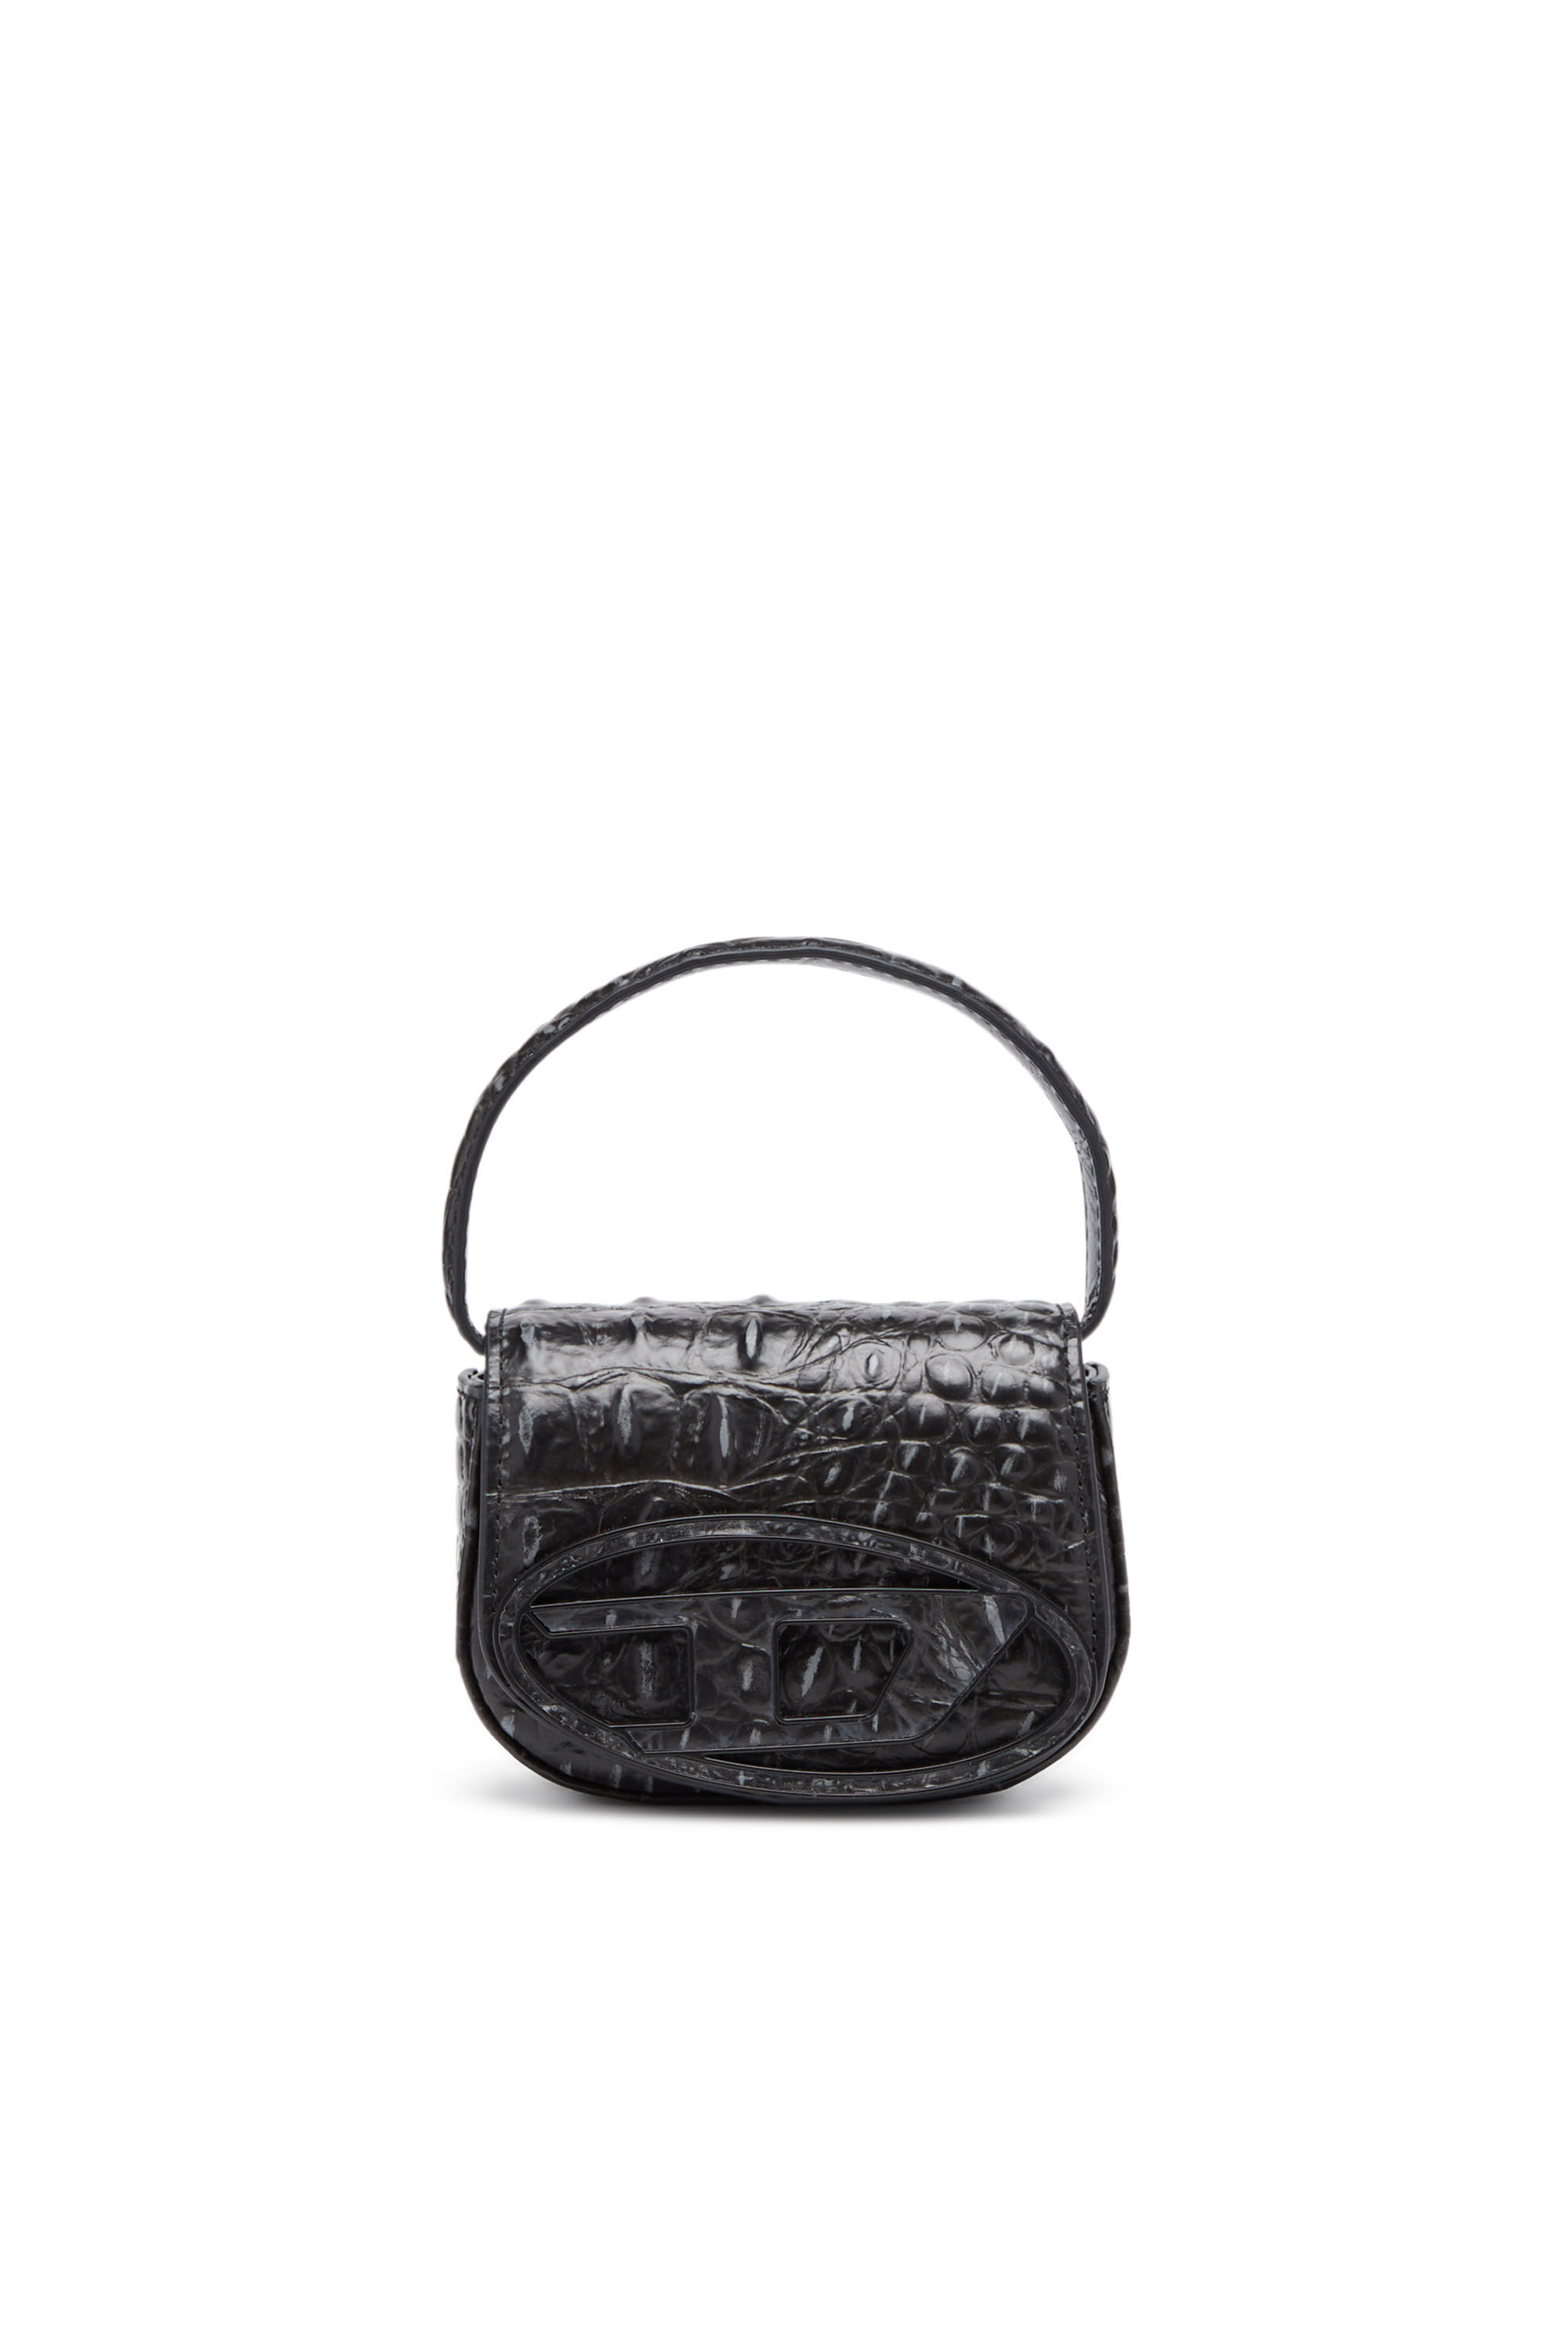 Maje Lover crocodile-effect Bag Strap - Black